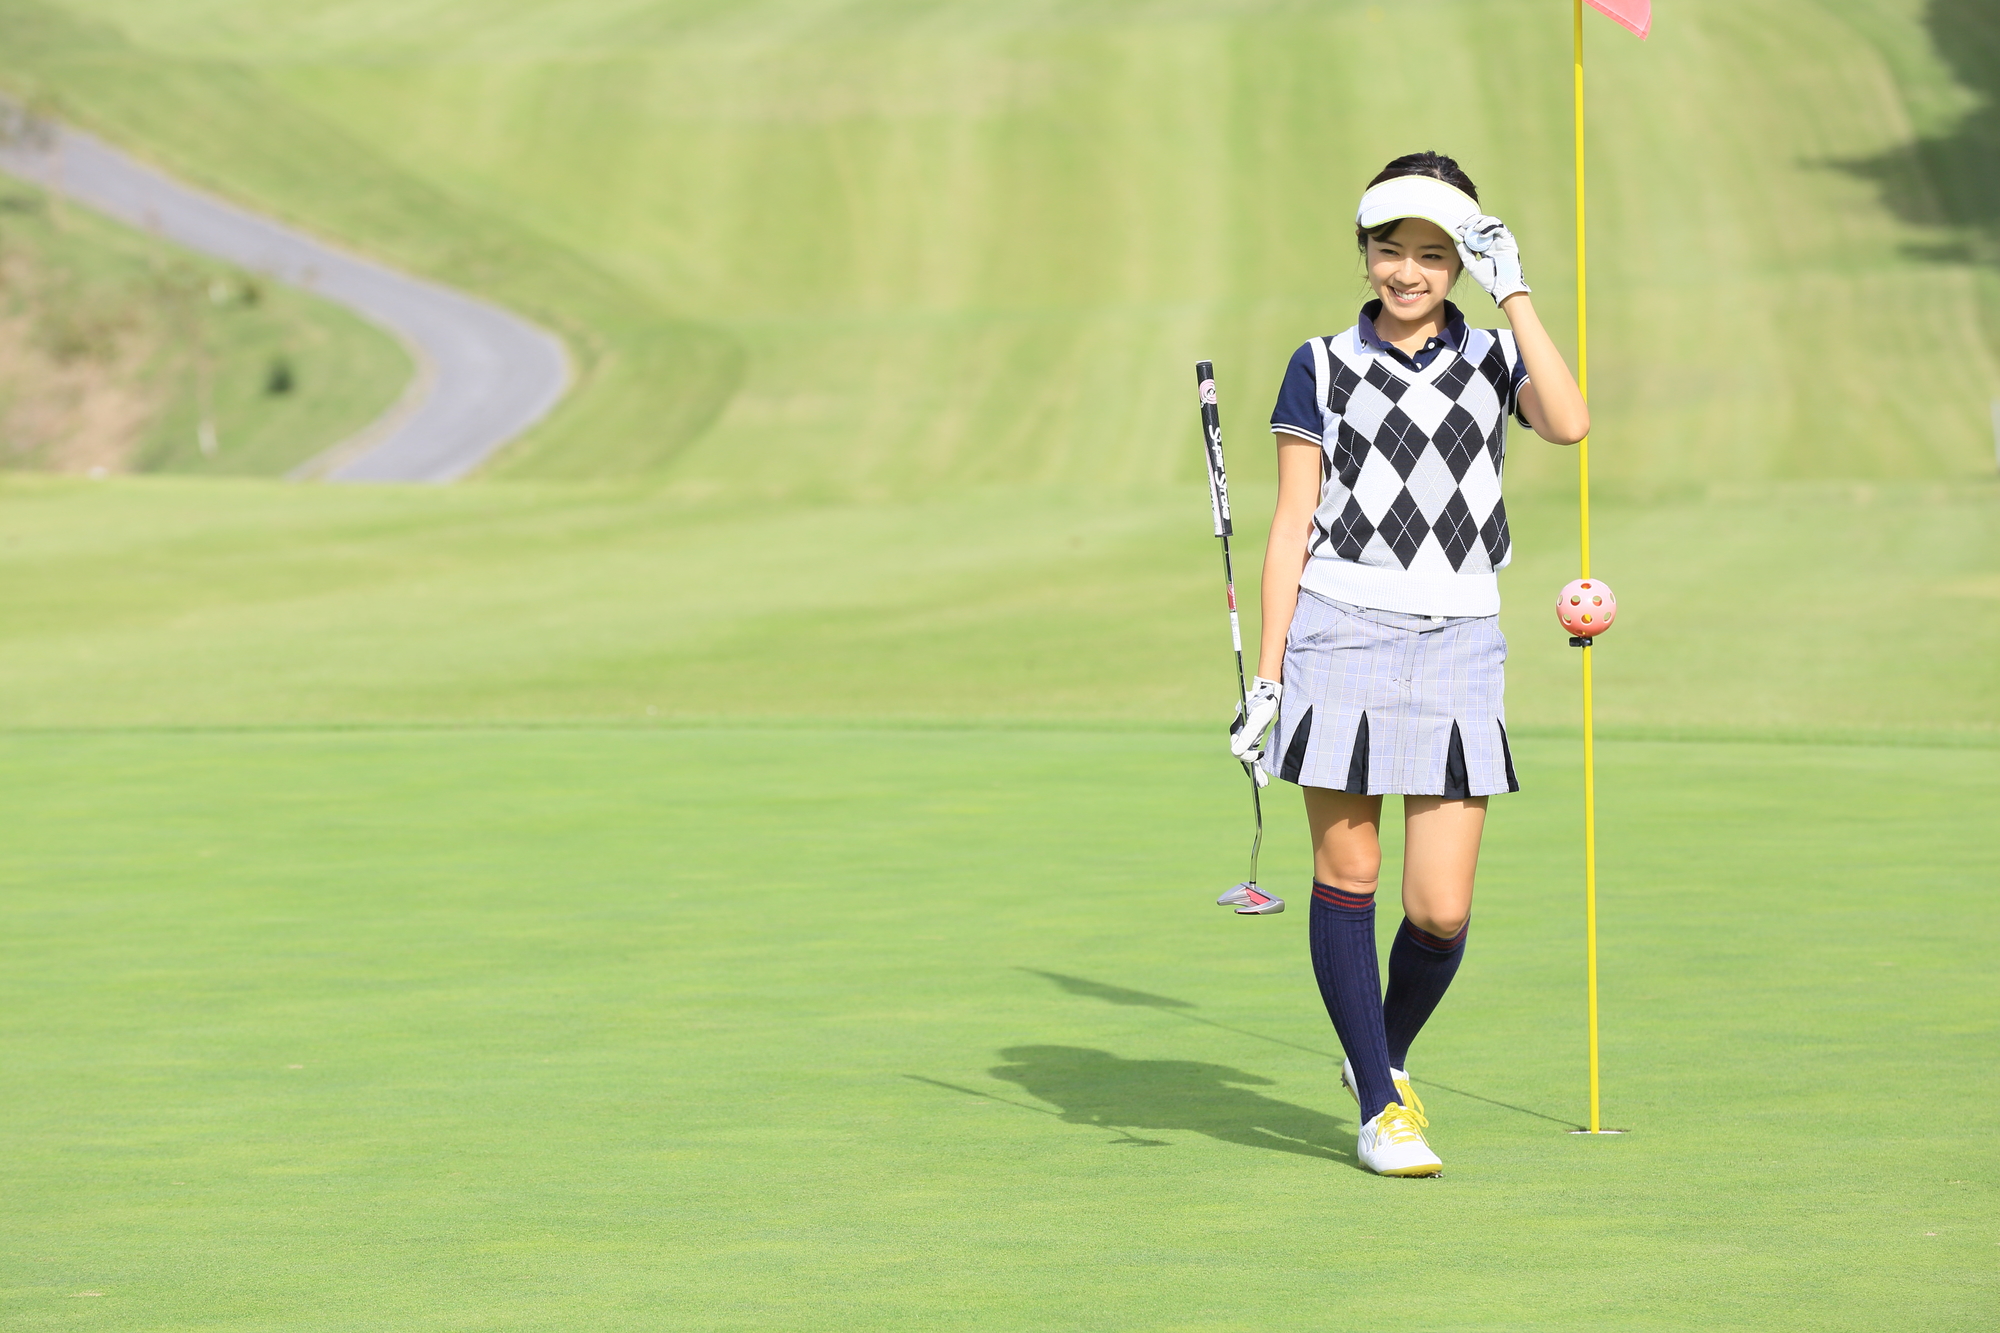 ゴルフ初心者女性の初ラウンドのスコアはどのぐらい 鎌倉パブリックゴルフ場